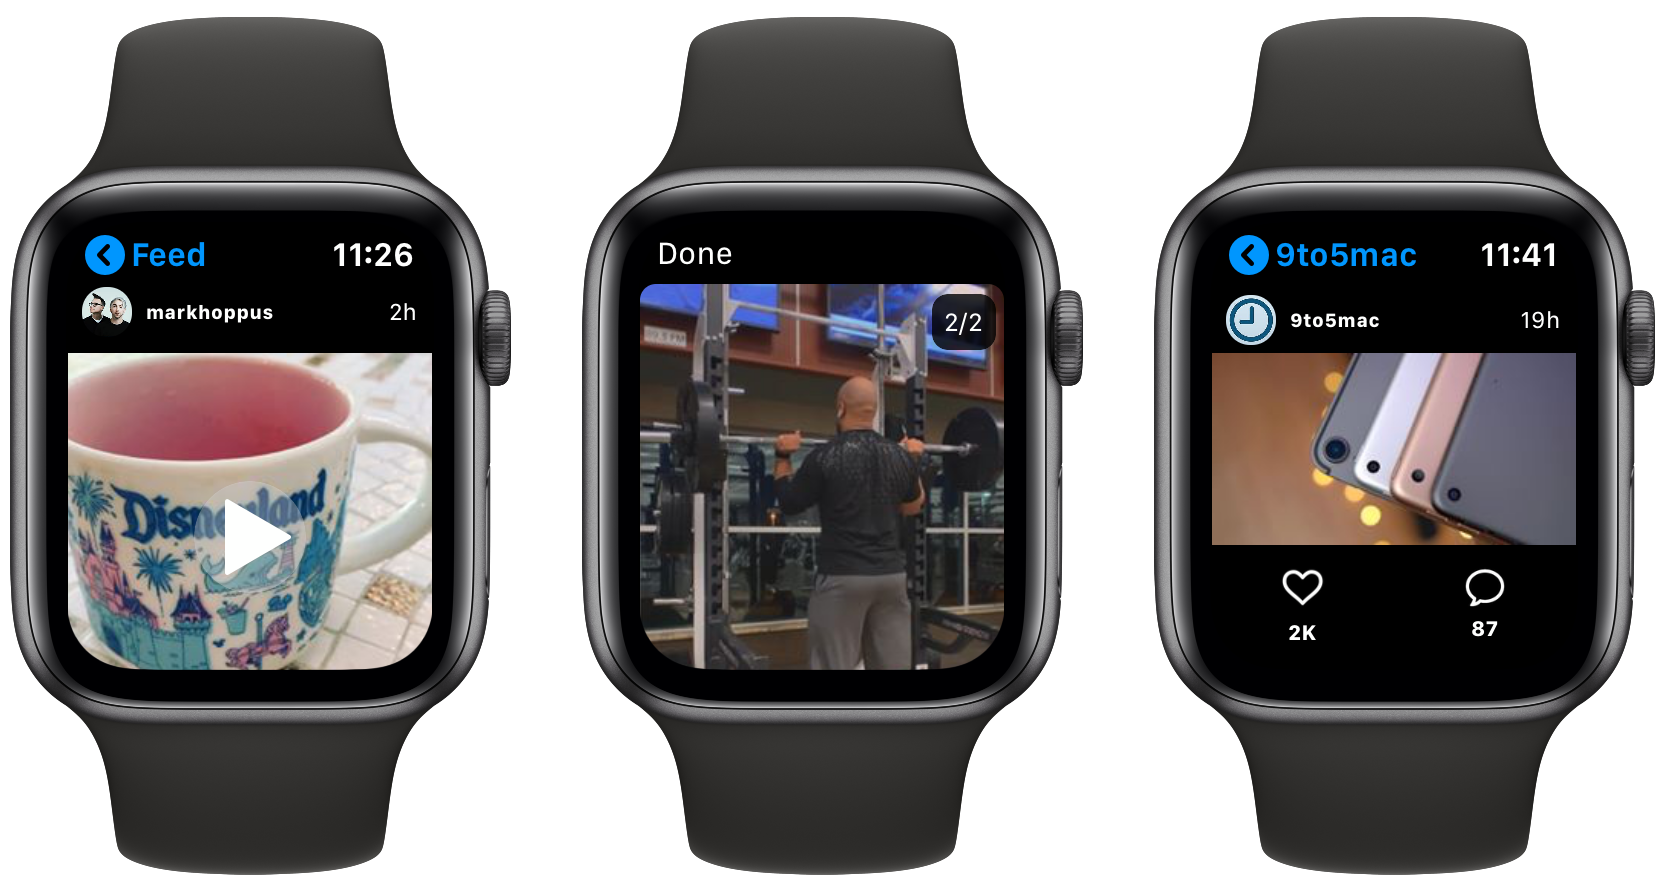 Watch Инстаграм. Instagram Apple watch. Приложение Инстаграм для Эппл вотч. Apple watch для Инстаграм.